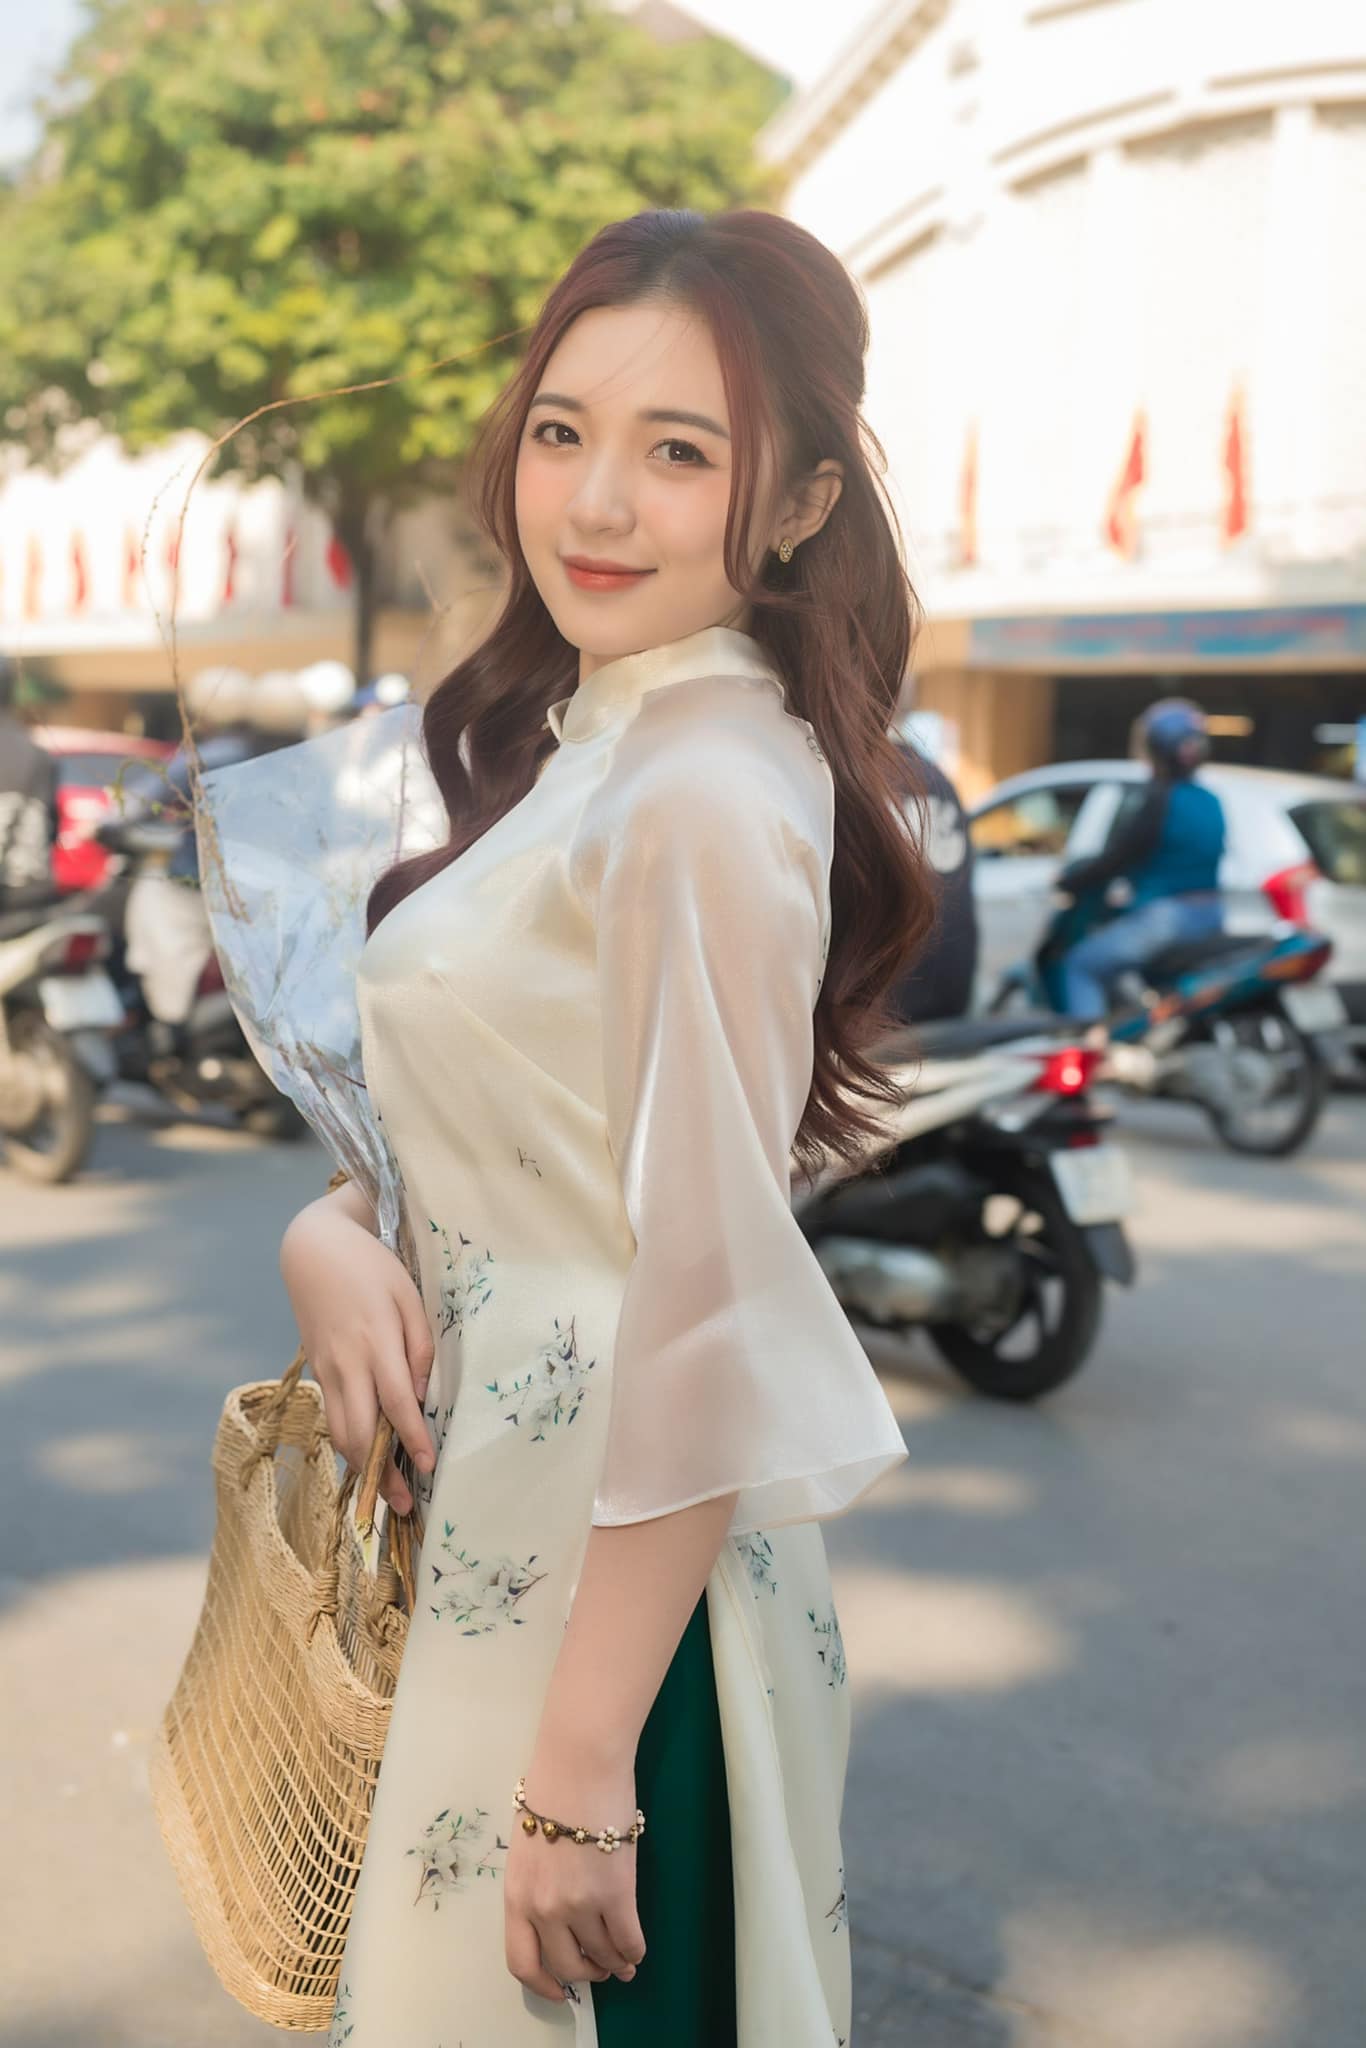 MC Phương Thảo nổi bật với vẻ ngoài xinh đẹp.